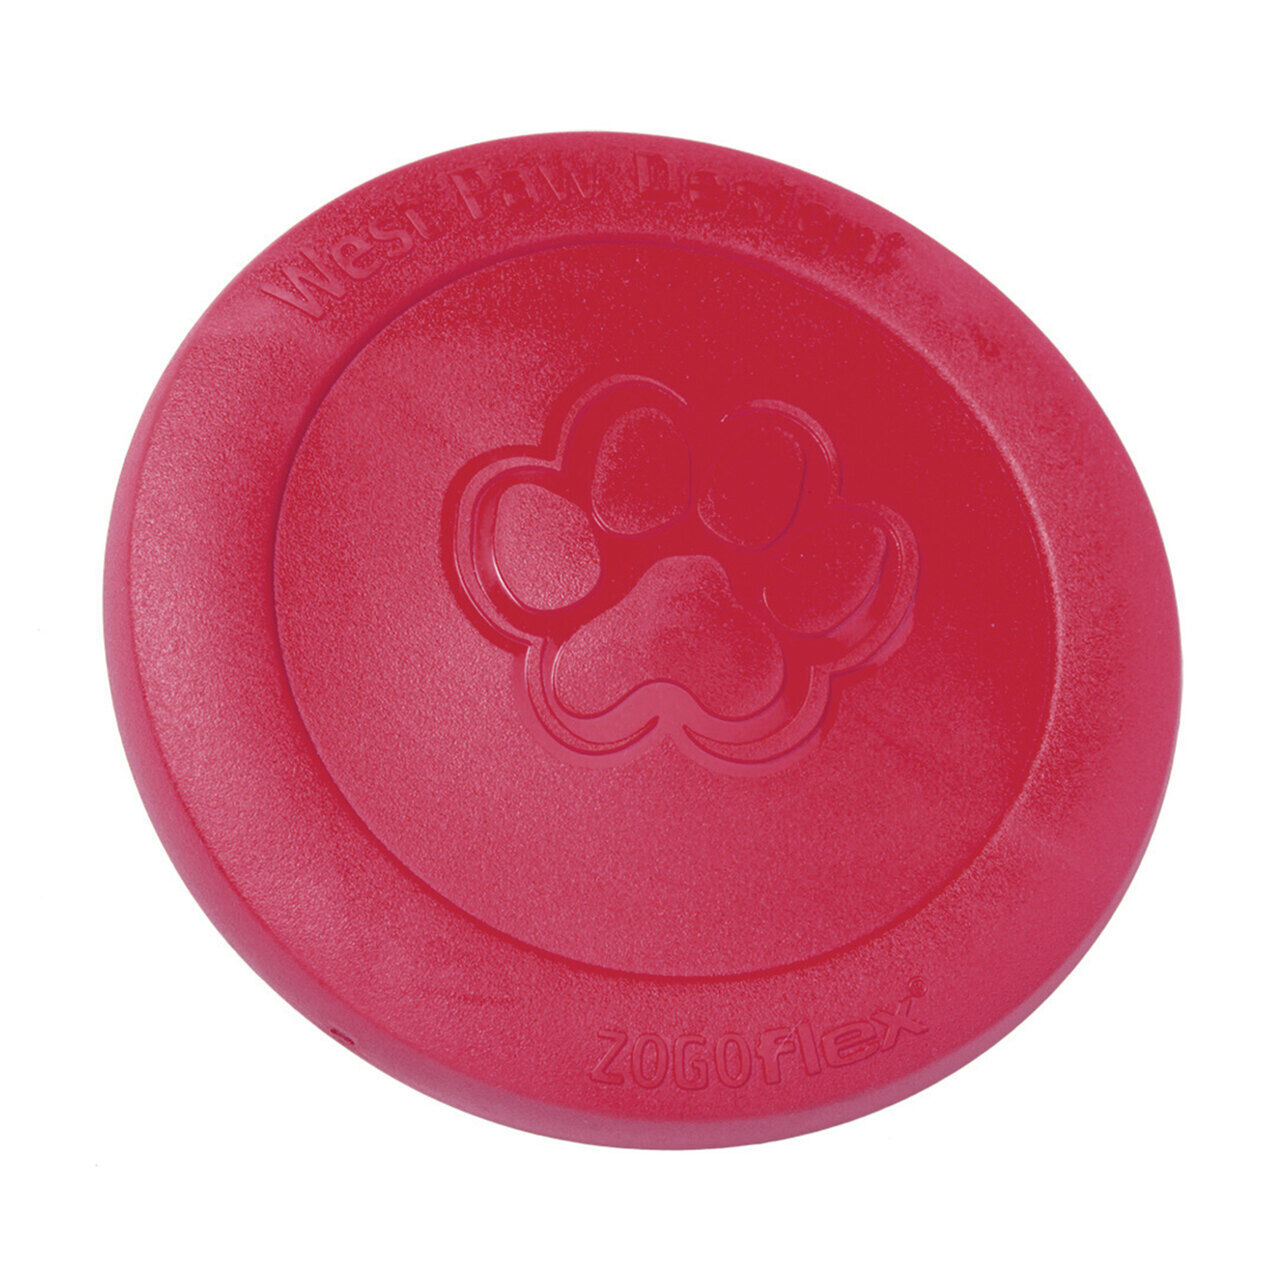 Westpaw-Zisc-Hunde-Frisbee-Wurfscheibe-weihnachtlich-rubinrot-ruby-gute-Flugeigenschaften-large-22150